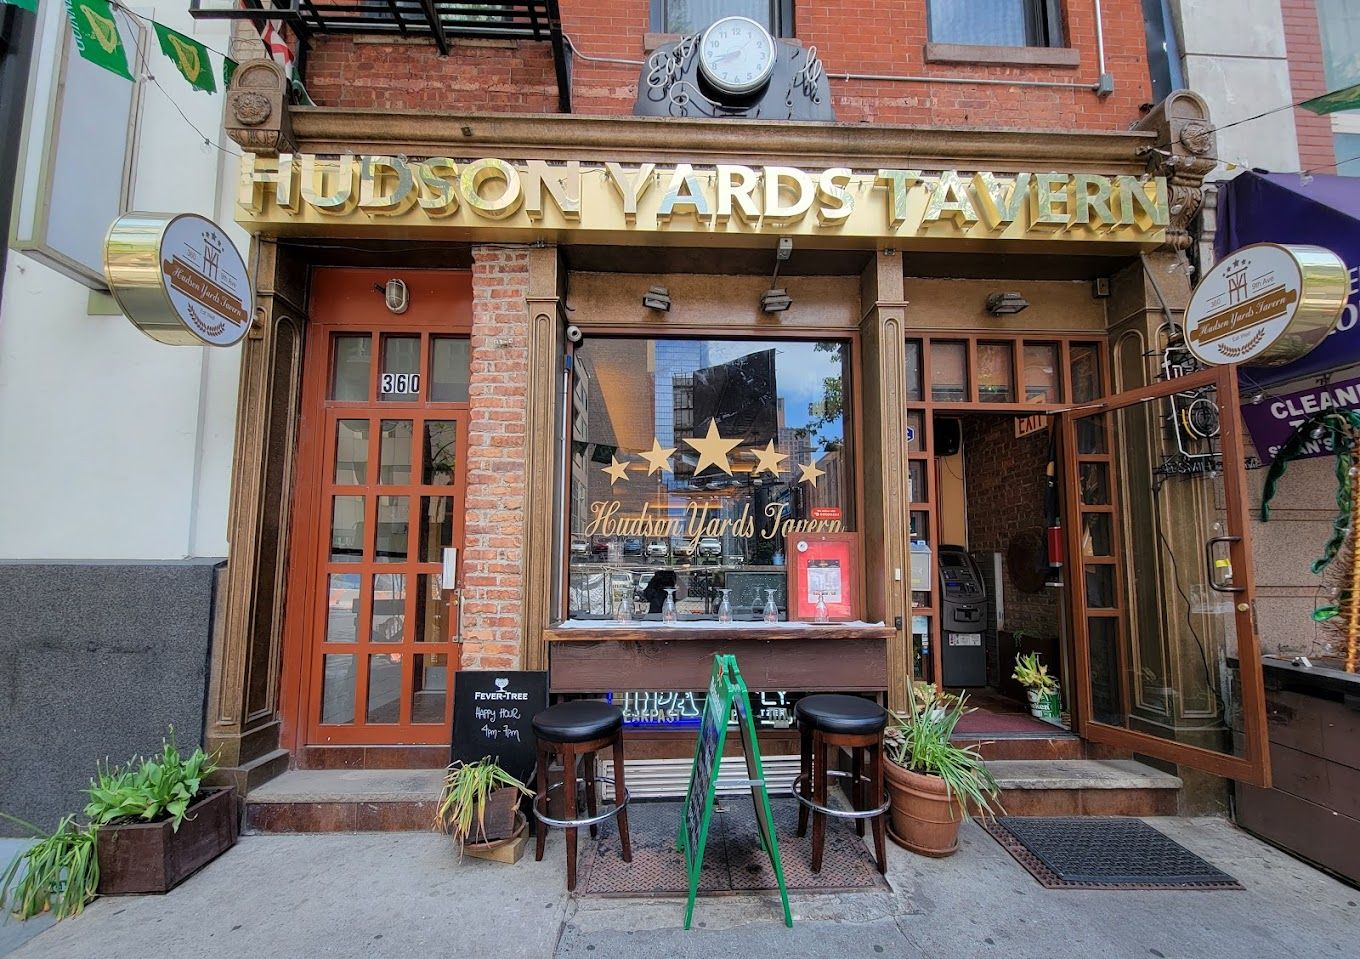 Hudson Yards Tavern